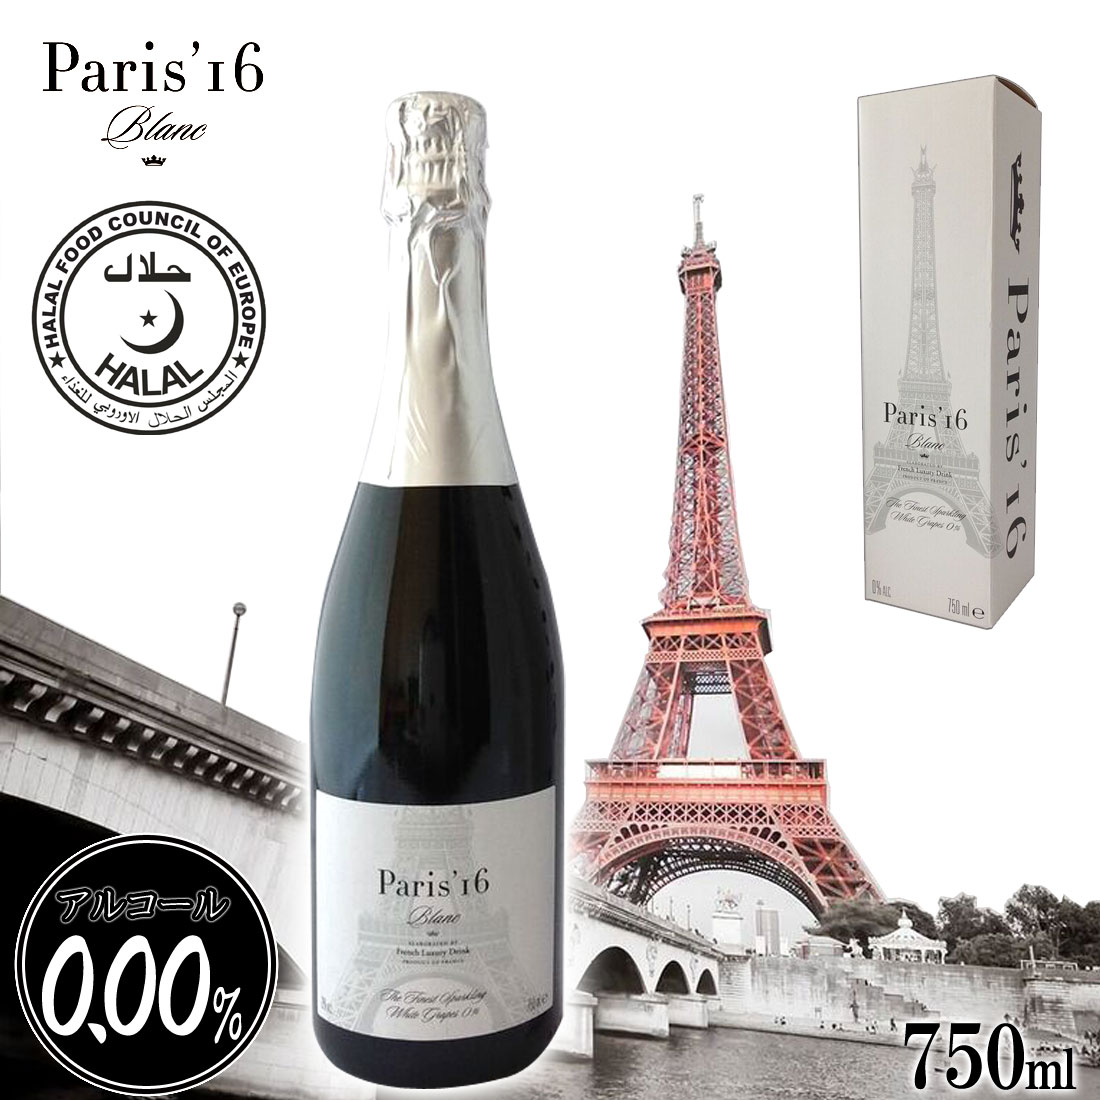  【日本先行発売】【Paris'16 Blanc】【最高級 ノンアルコールワイン】 ノンアルコール シャンパン スパークリング 白ワイン フランス産  贈り物 記念日 パーティー お祝い アルコール0.00％ 750ml  母の日 ギフト プレゼント